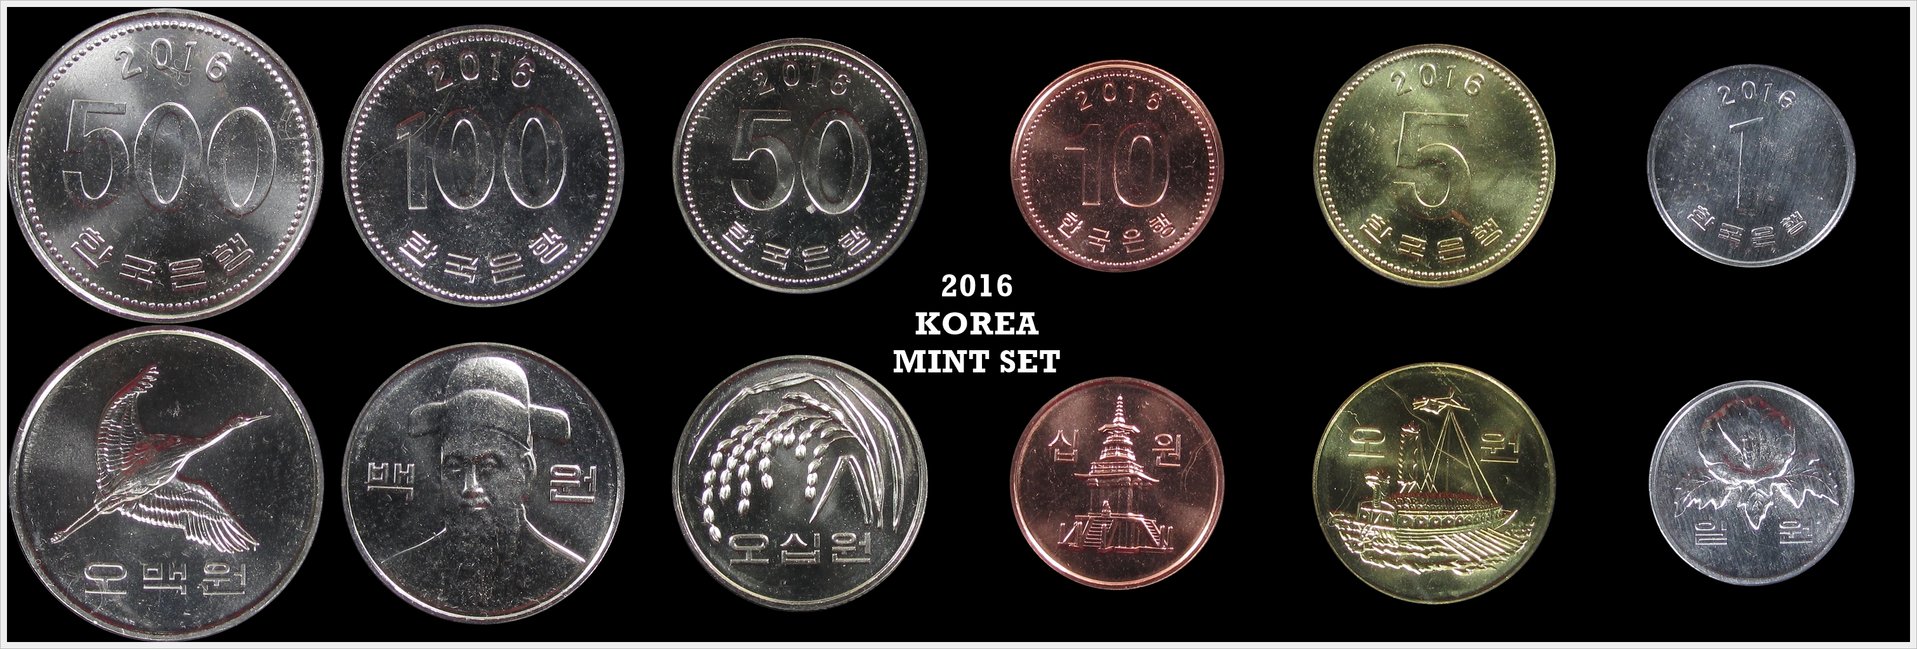 Korea 2016 Mint Set.jpg